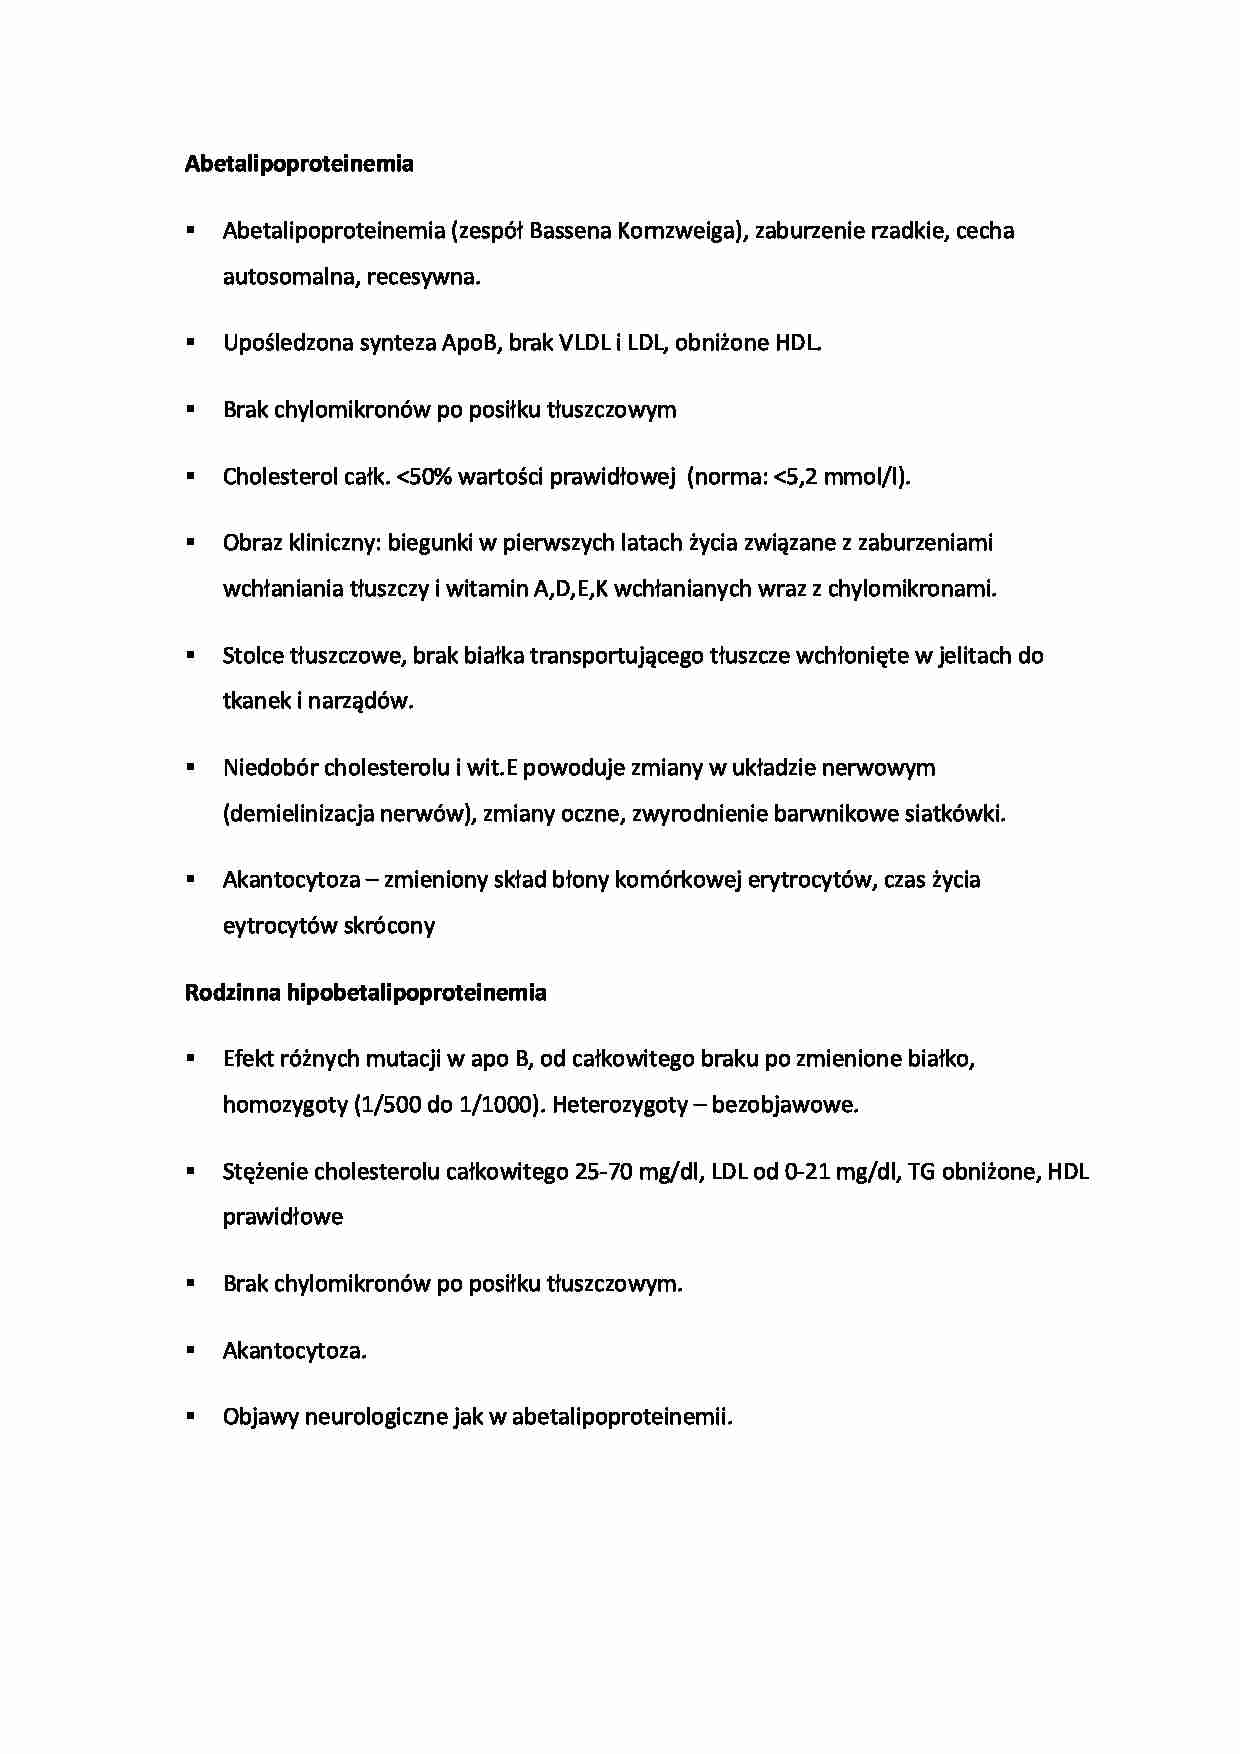 Abetalipoproteinemia - strona 1